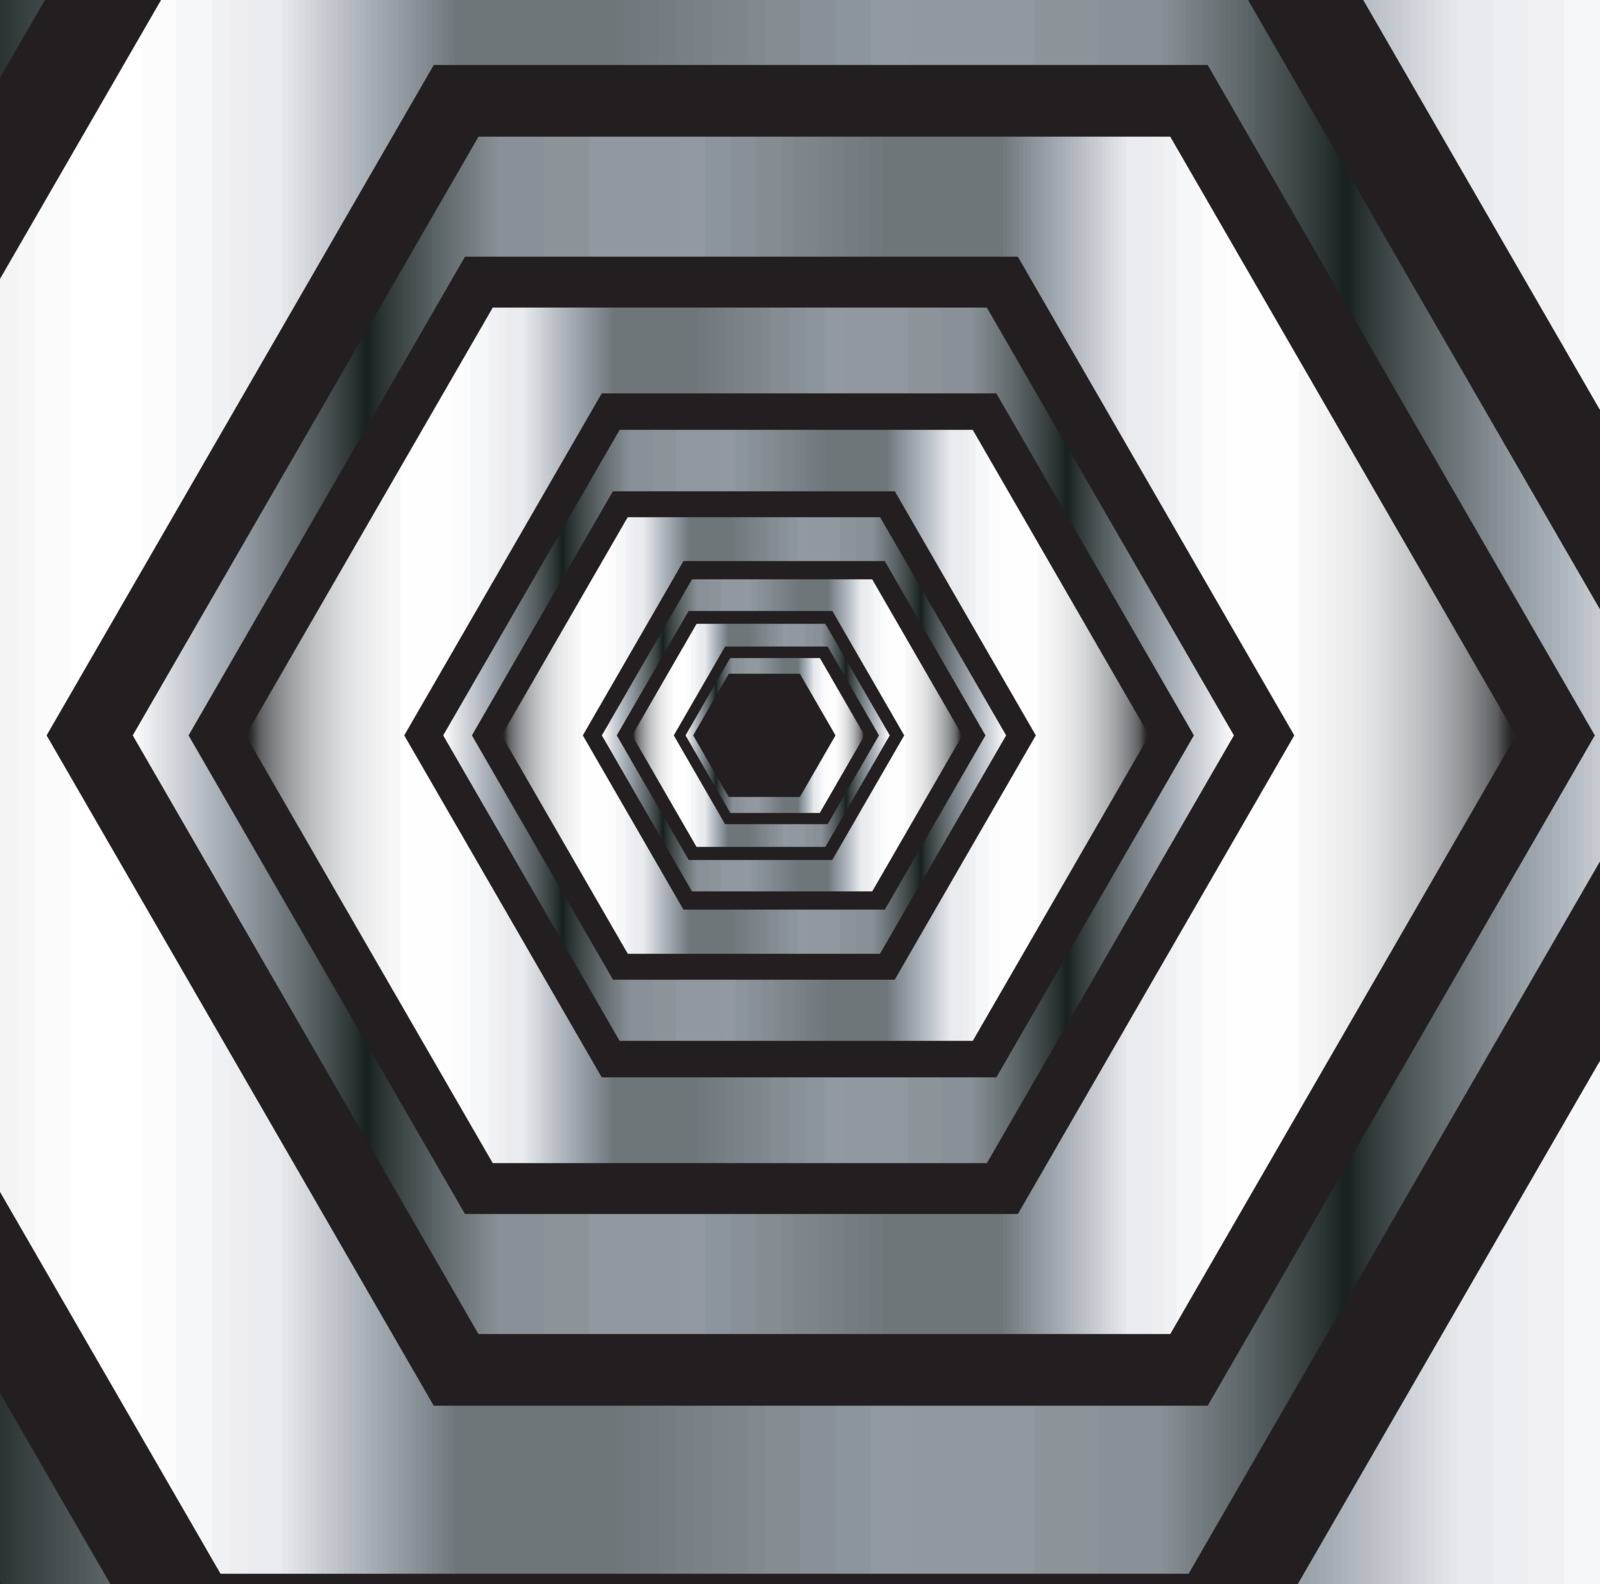 Metallic hexagonal illusion in metallic colors by shawlinmohd